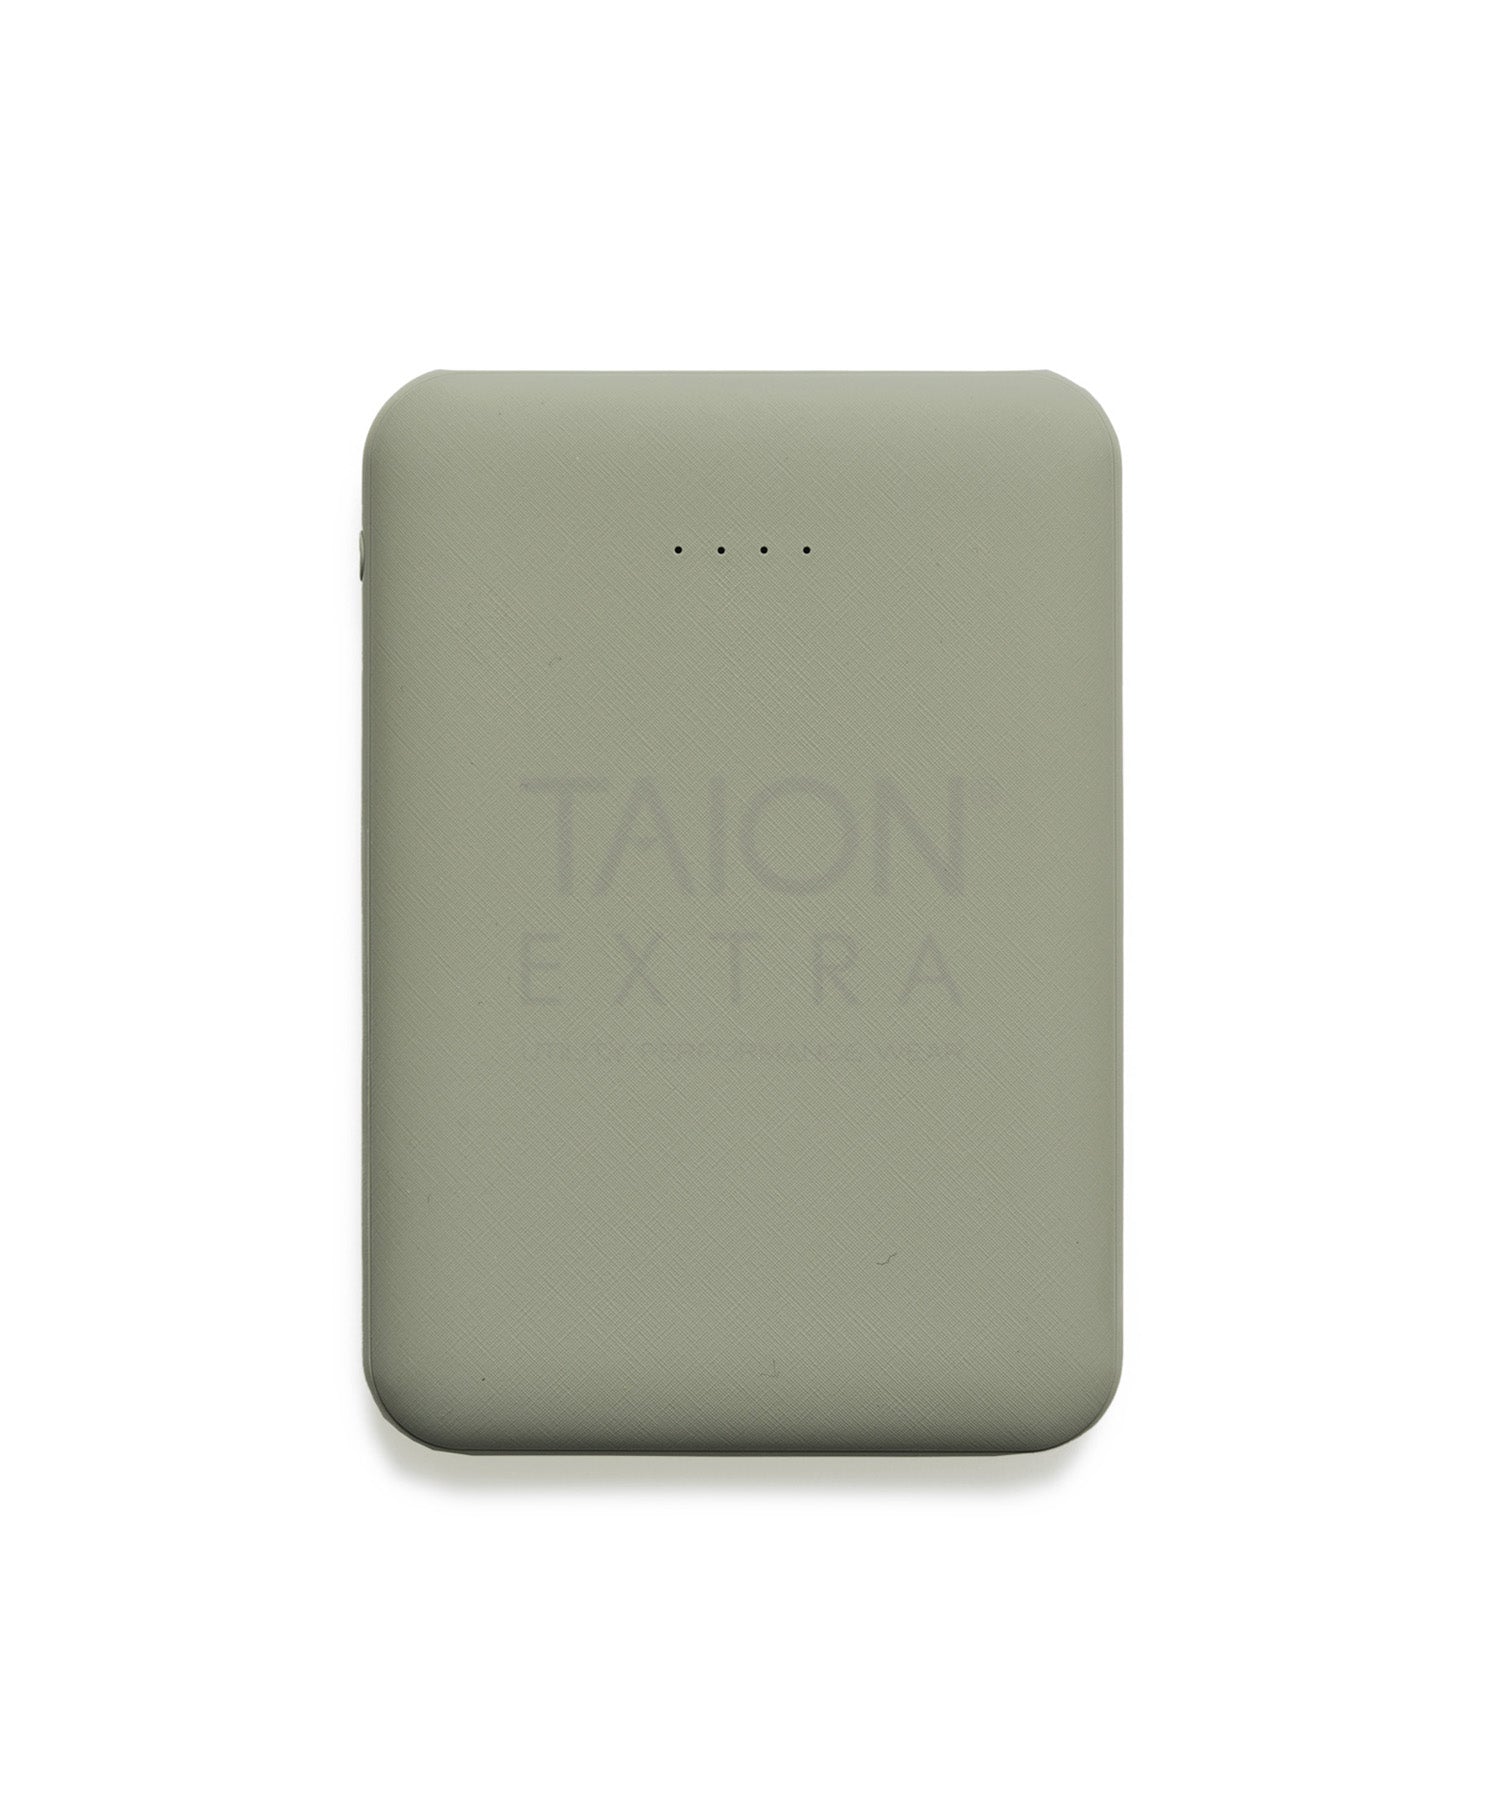 ダウンジャケット新品TAION EXTRA モバイルバッテリー発熱ハイネックインナーダウンセット